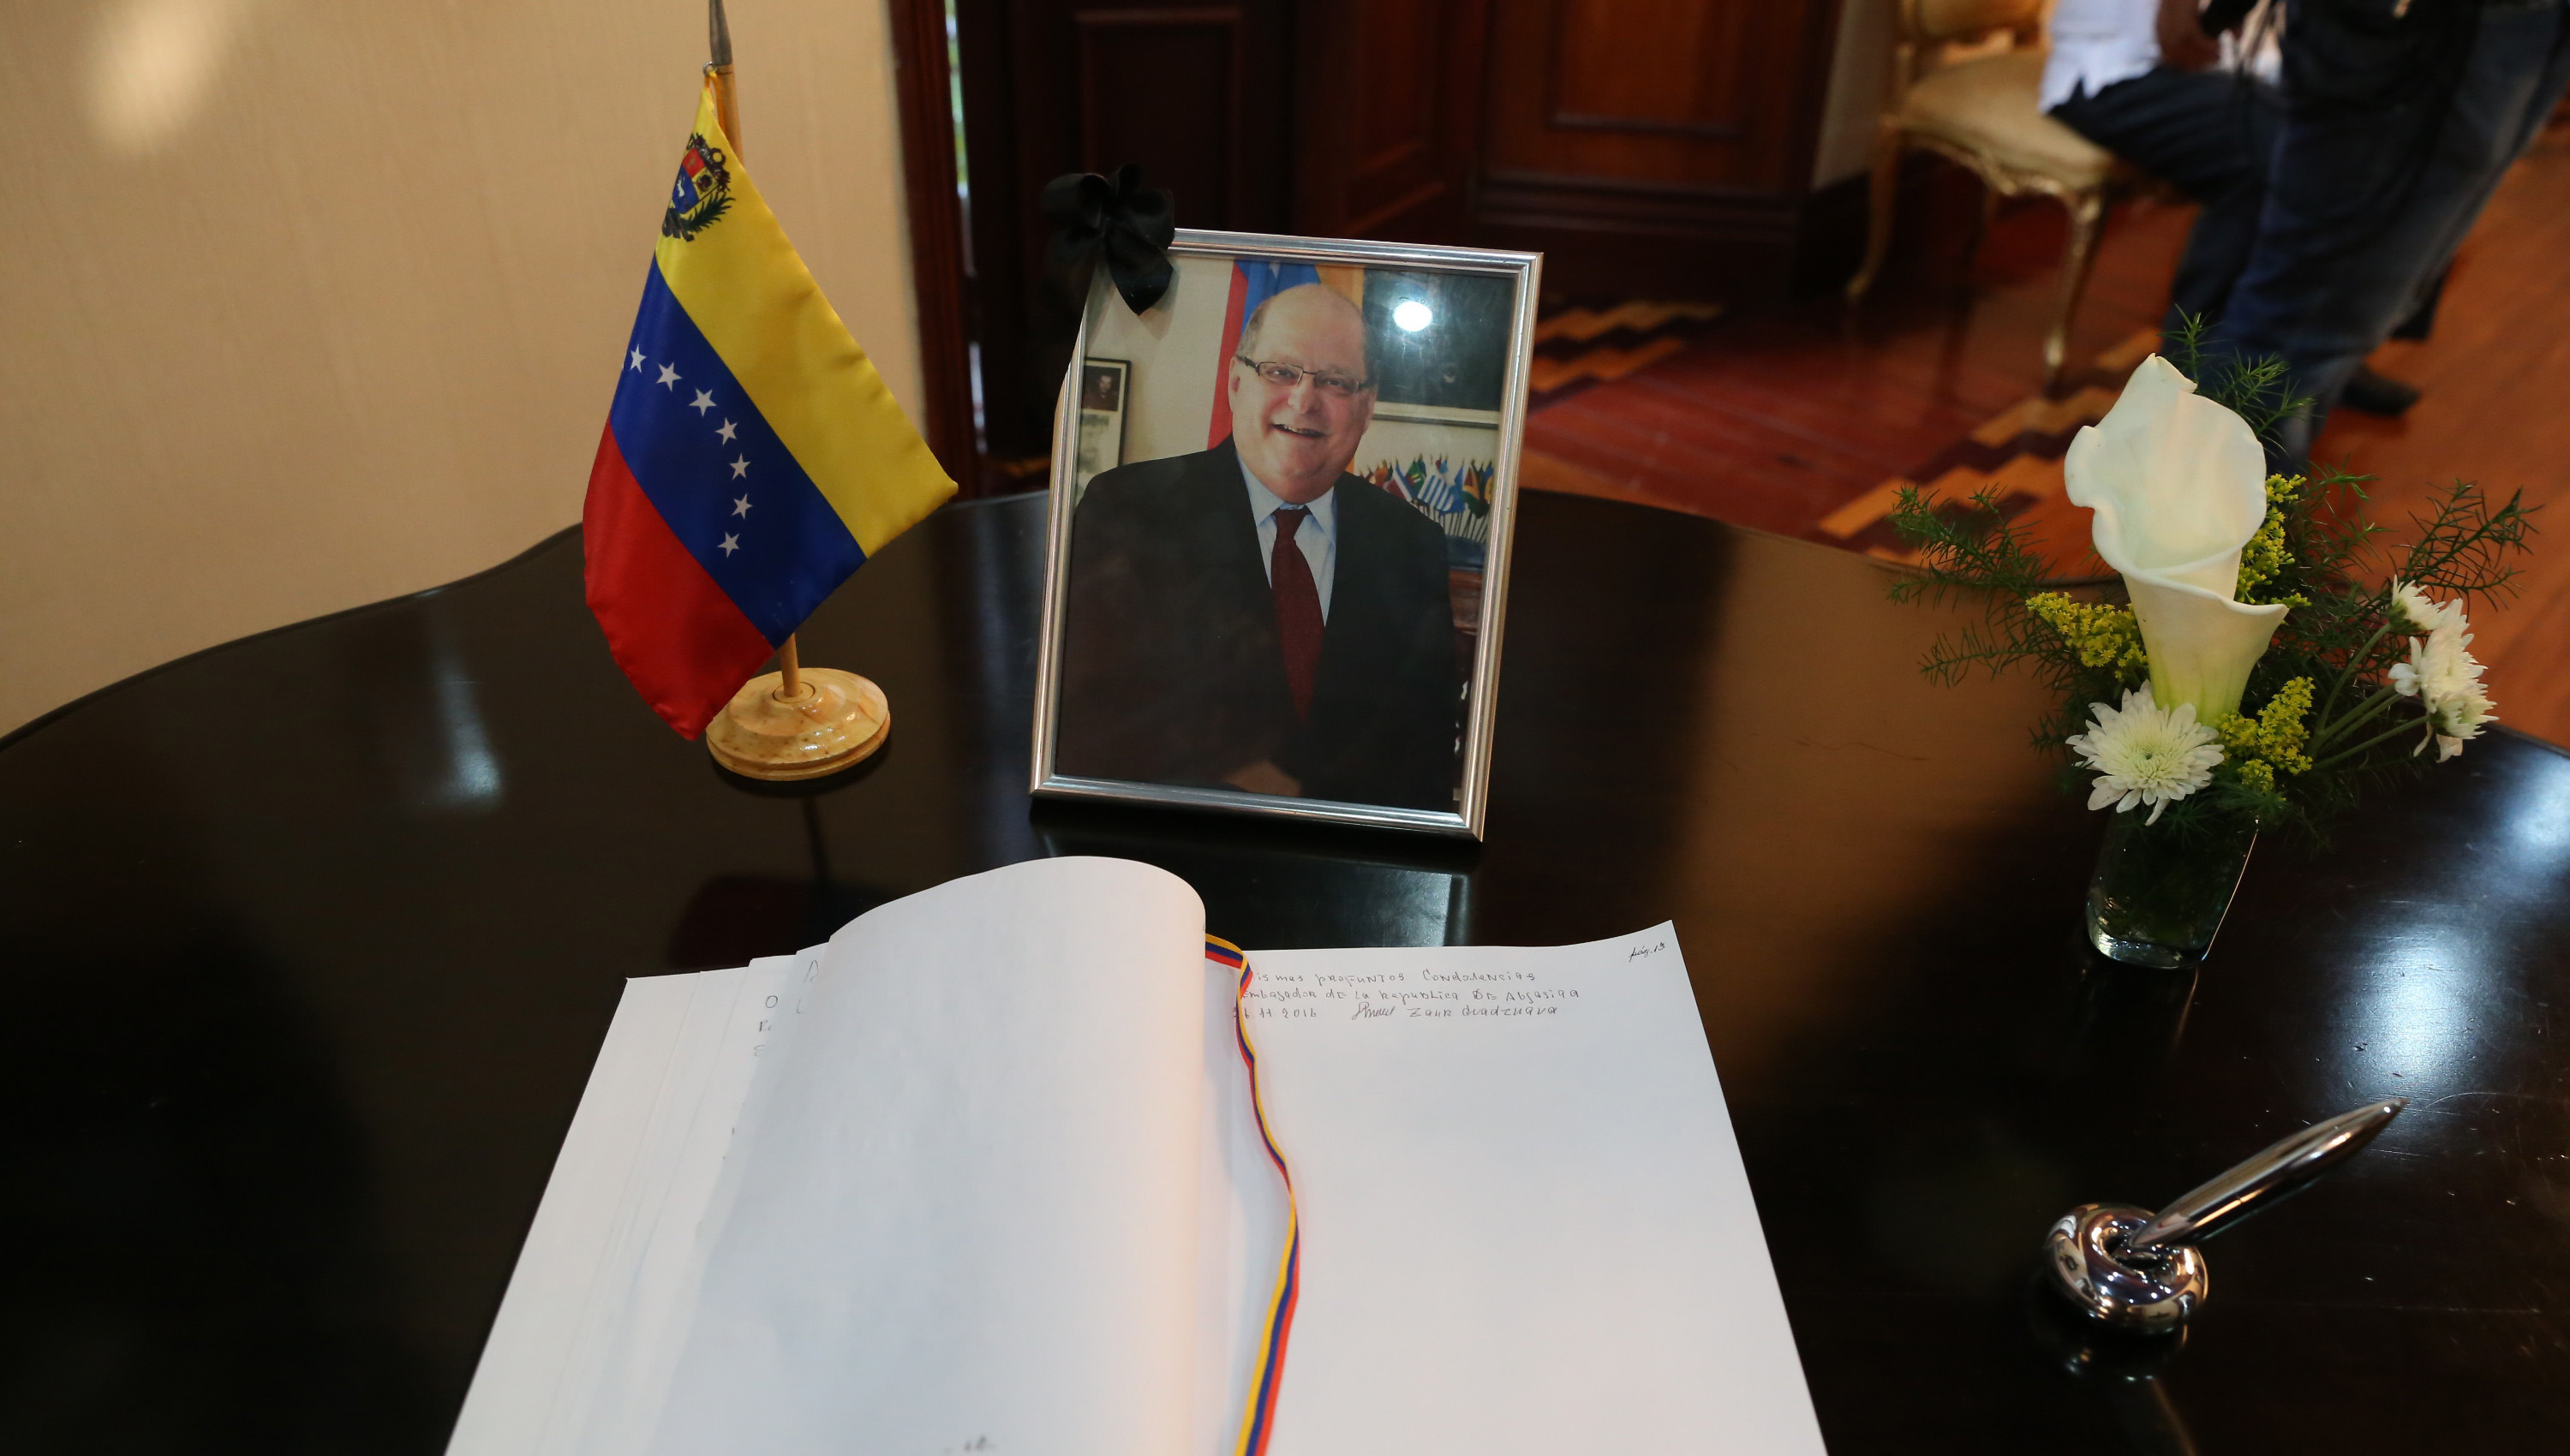 Los restos mortales de Álvarez fueron honrados en la sede de la Cancillería venezolana, ubicada en Caracas.